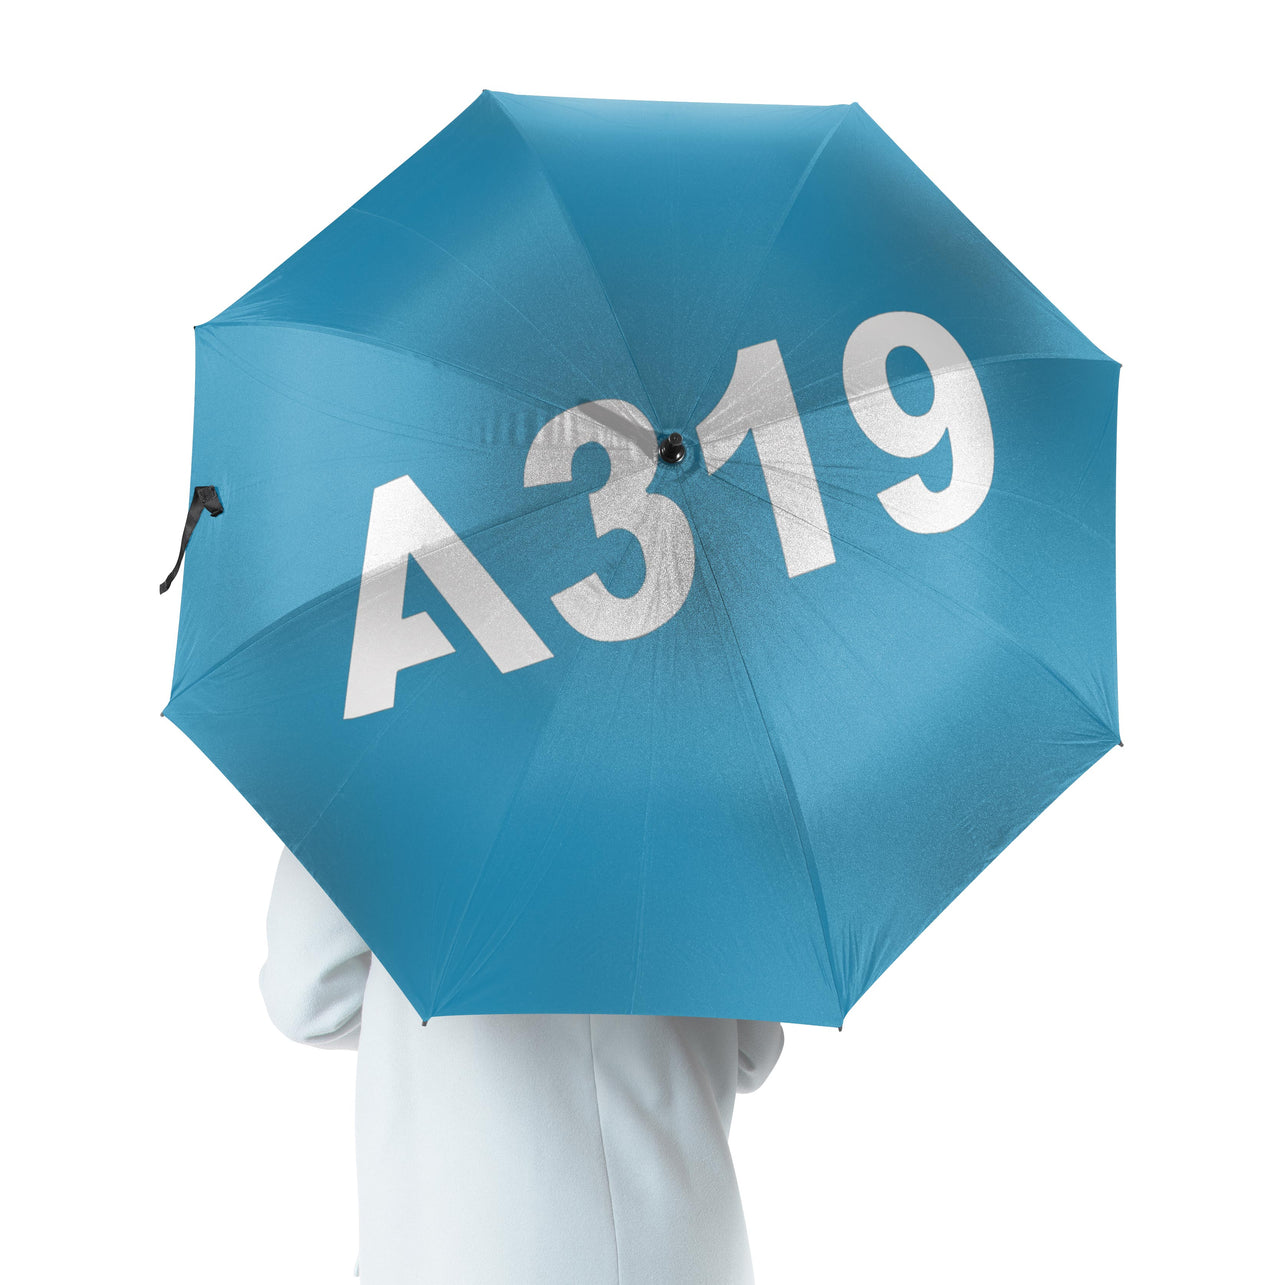 A319 Flat Text Designed Umbrella